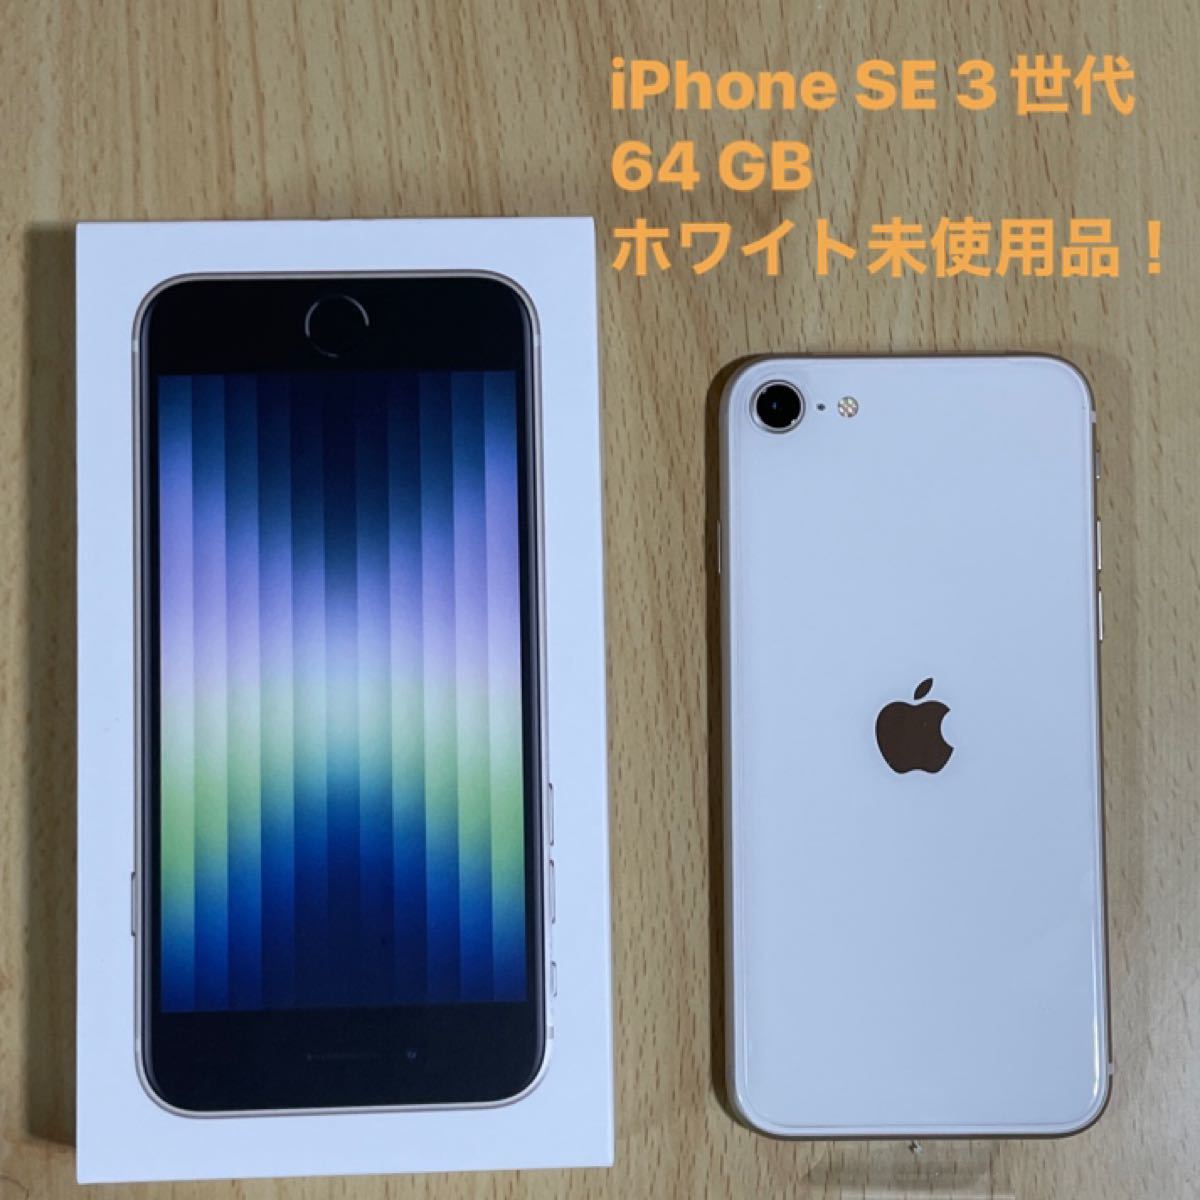 プロモーション到着 スターライト (SE3) 第3世代 SE iPhone 64 au GB スマートフォン本体